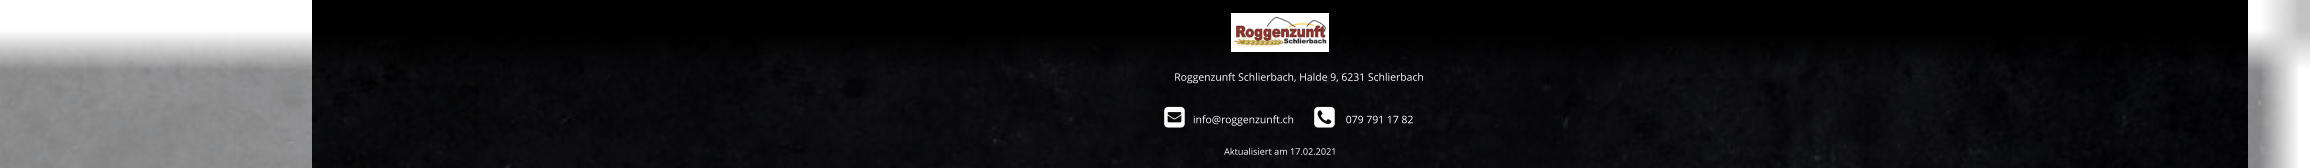 Roggenzunft Schlierbach, Halde 9, 6231 Schlierbach          info@roggenzunft.ch            079 791 17 82 Aktualisiert am 17.02.2021                                                                                                   